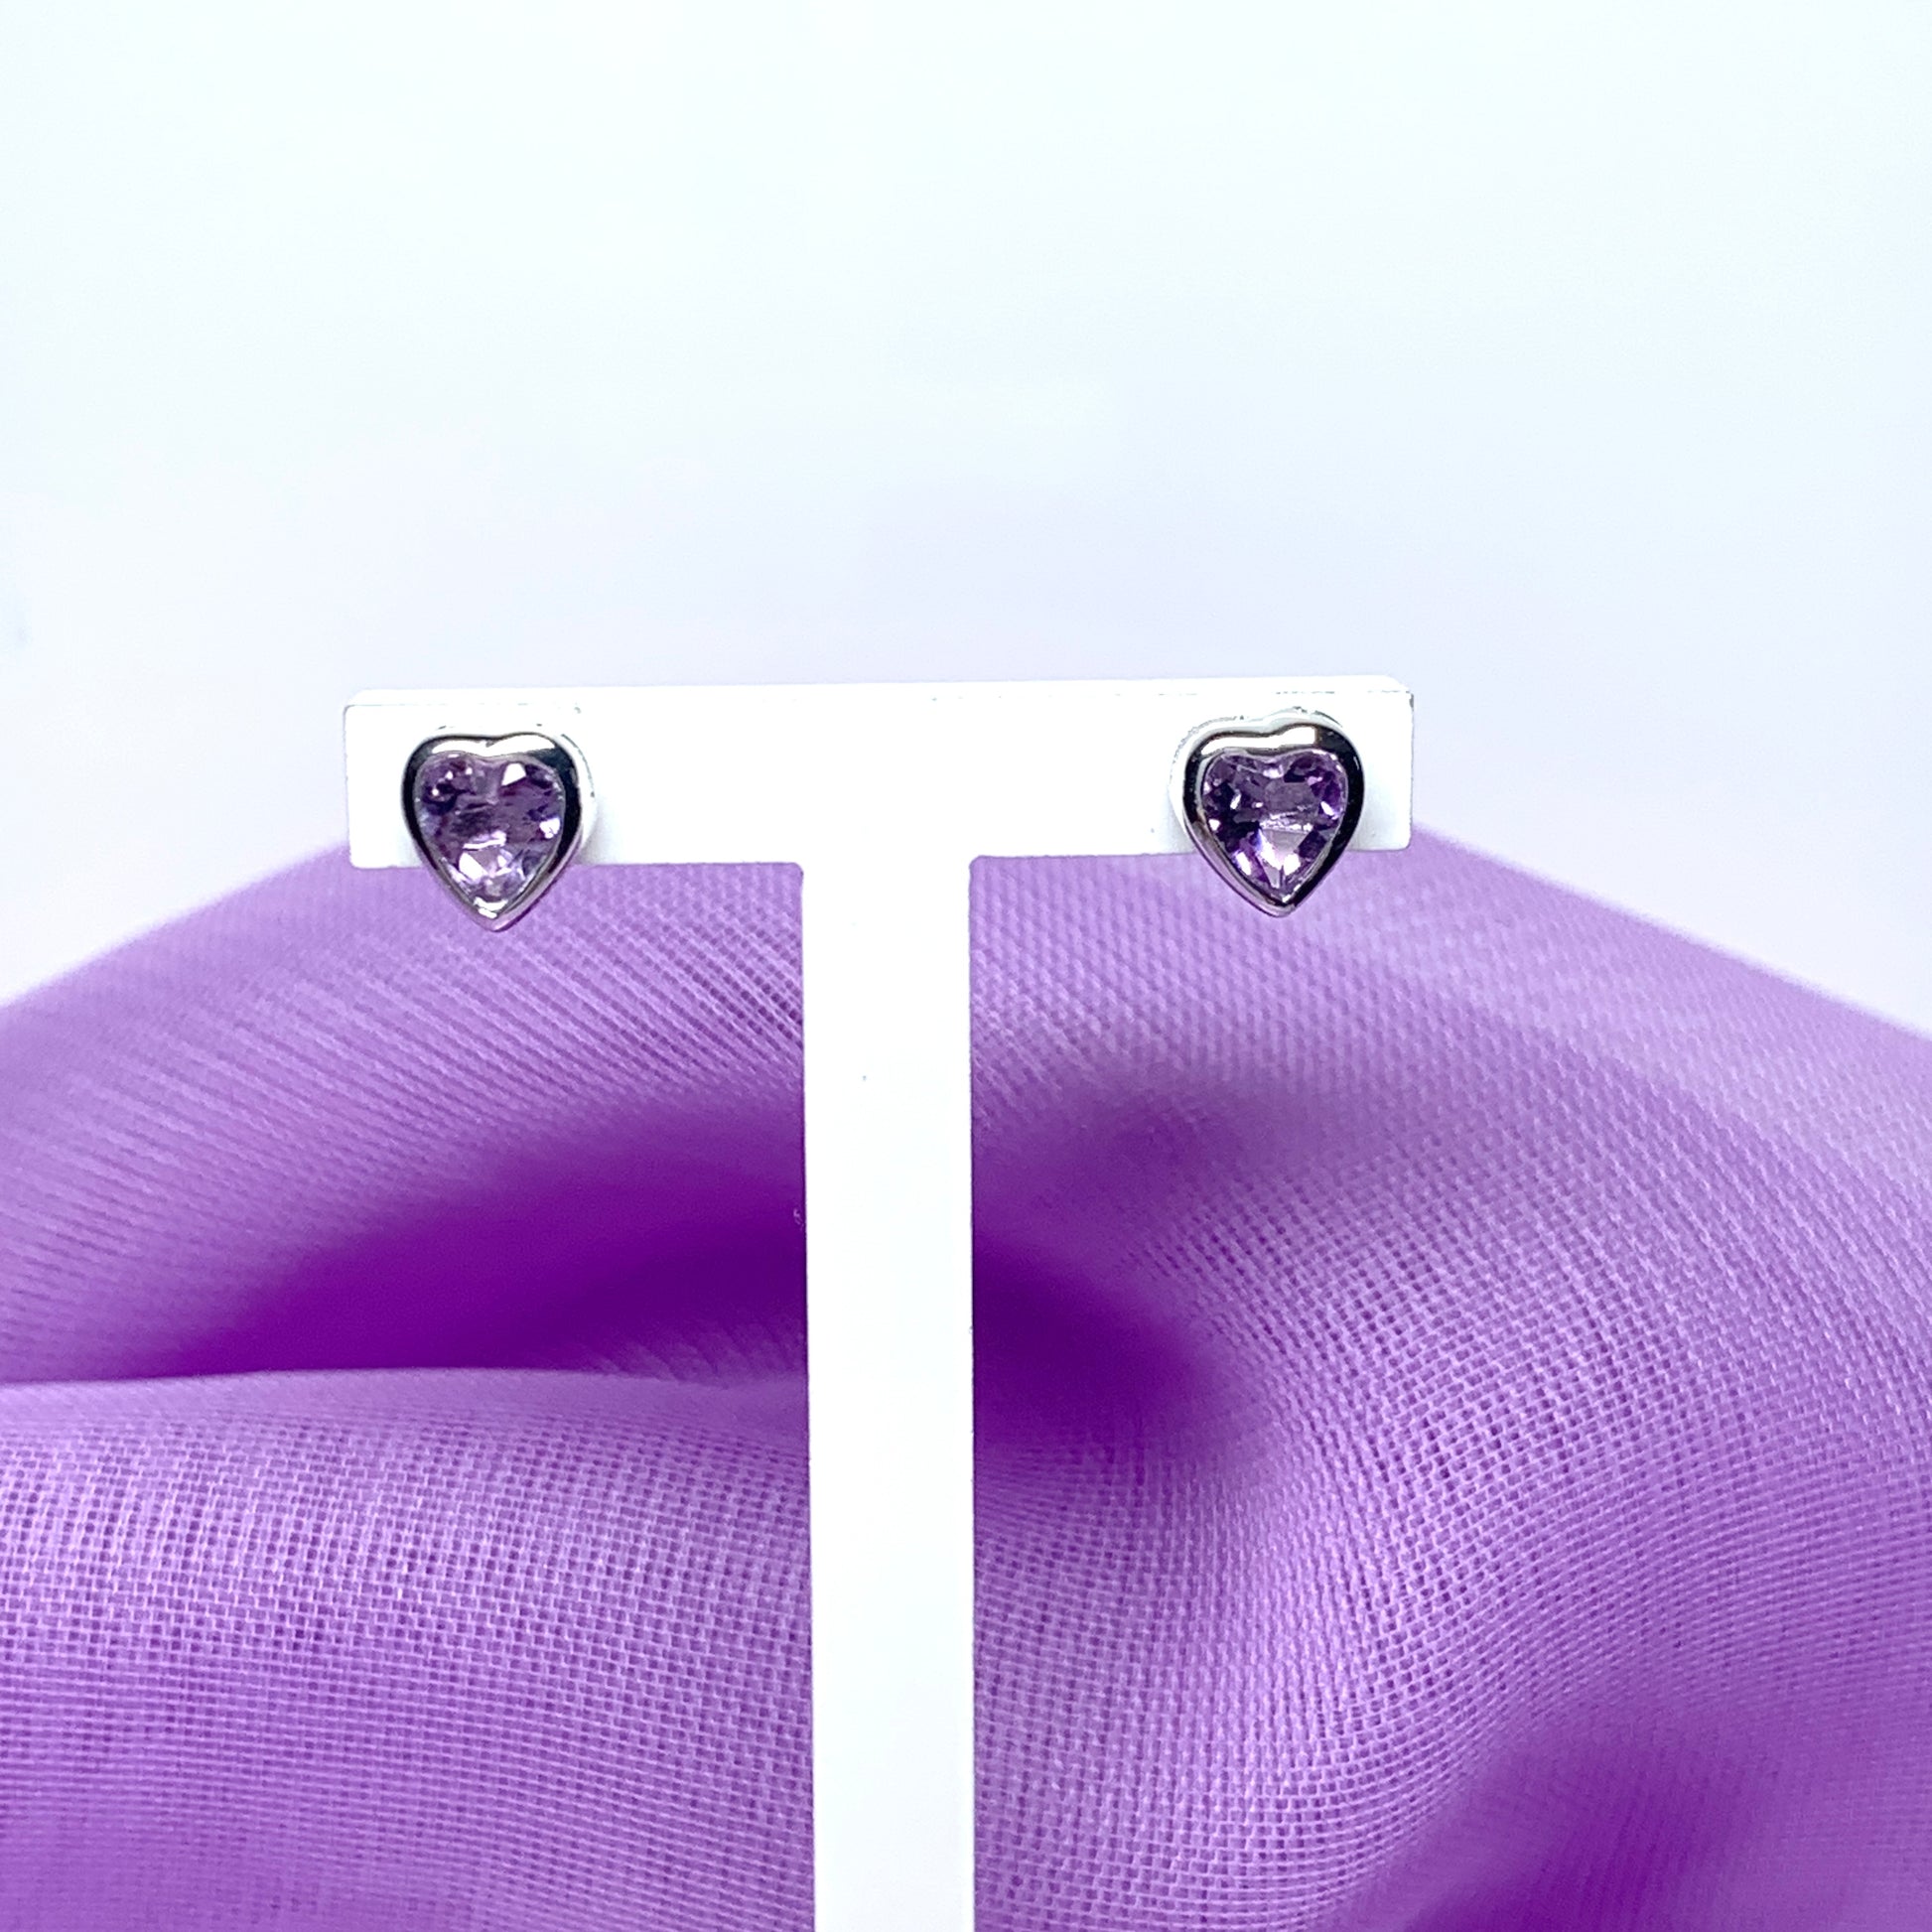 Heart shaped amethyst sterling silver stud earrings